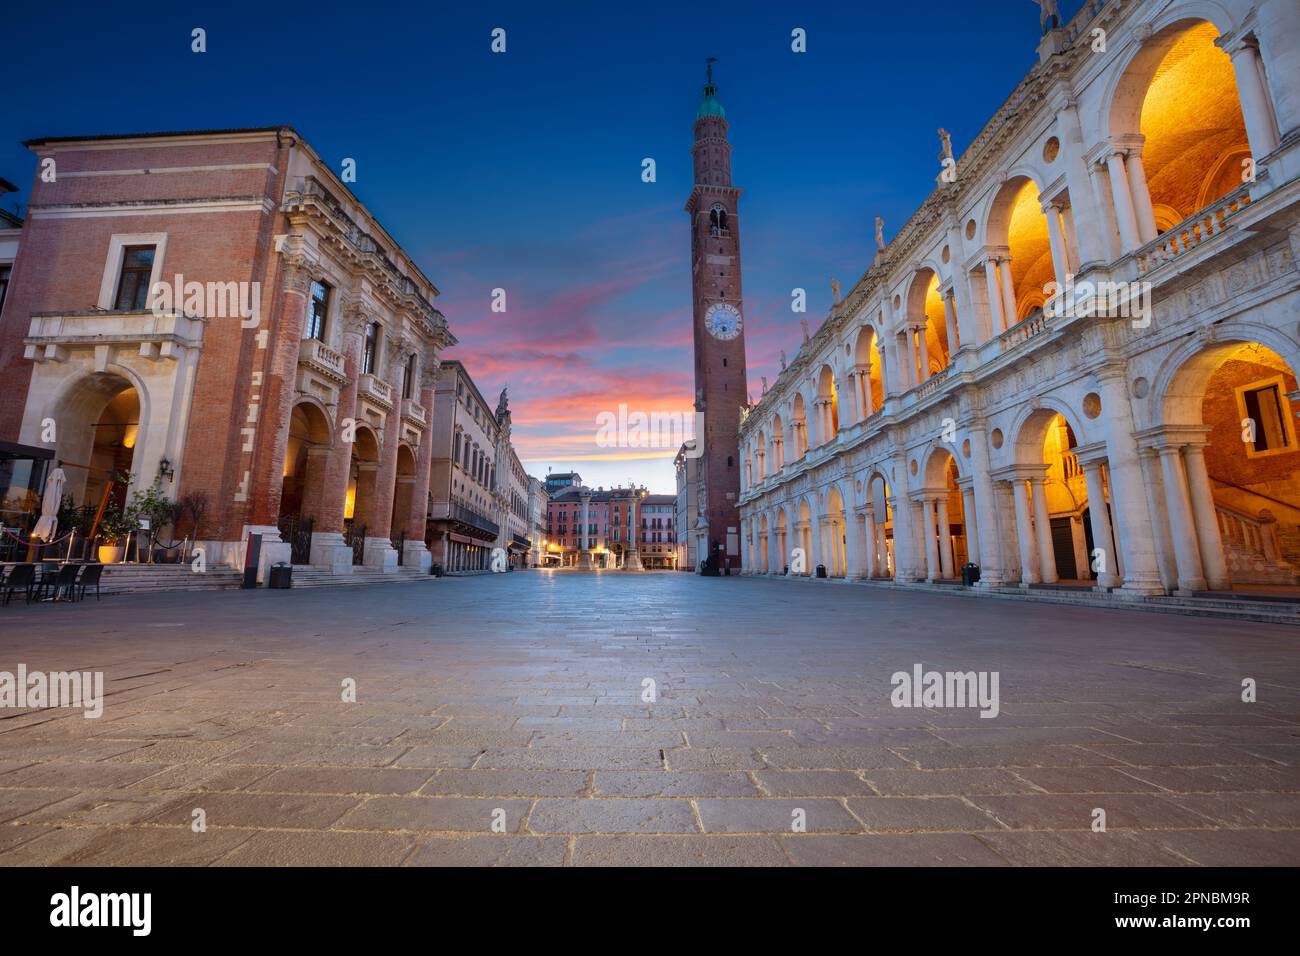 Vicenza, Italia. Immagine del centro storico di Vicenza, Italia con la vecchia piazza (Piazza dei Signori) all'alba. Foto Stock